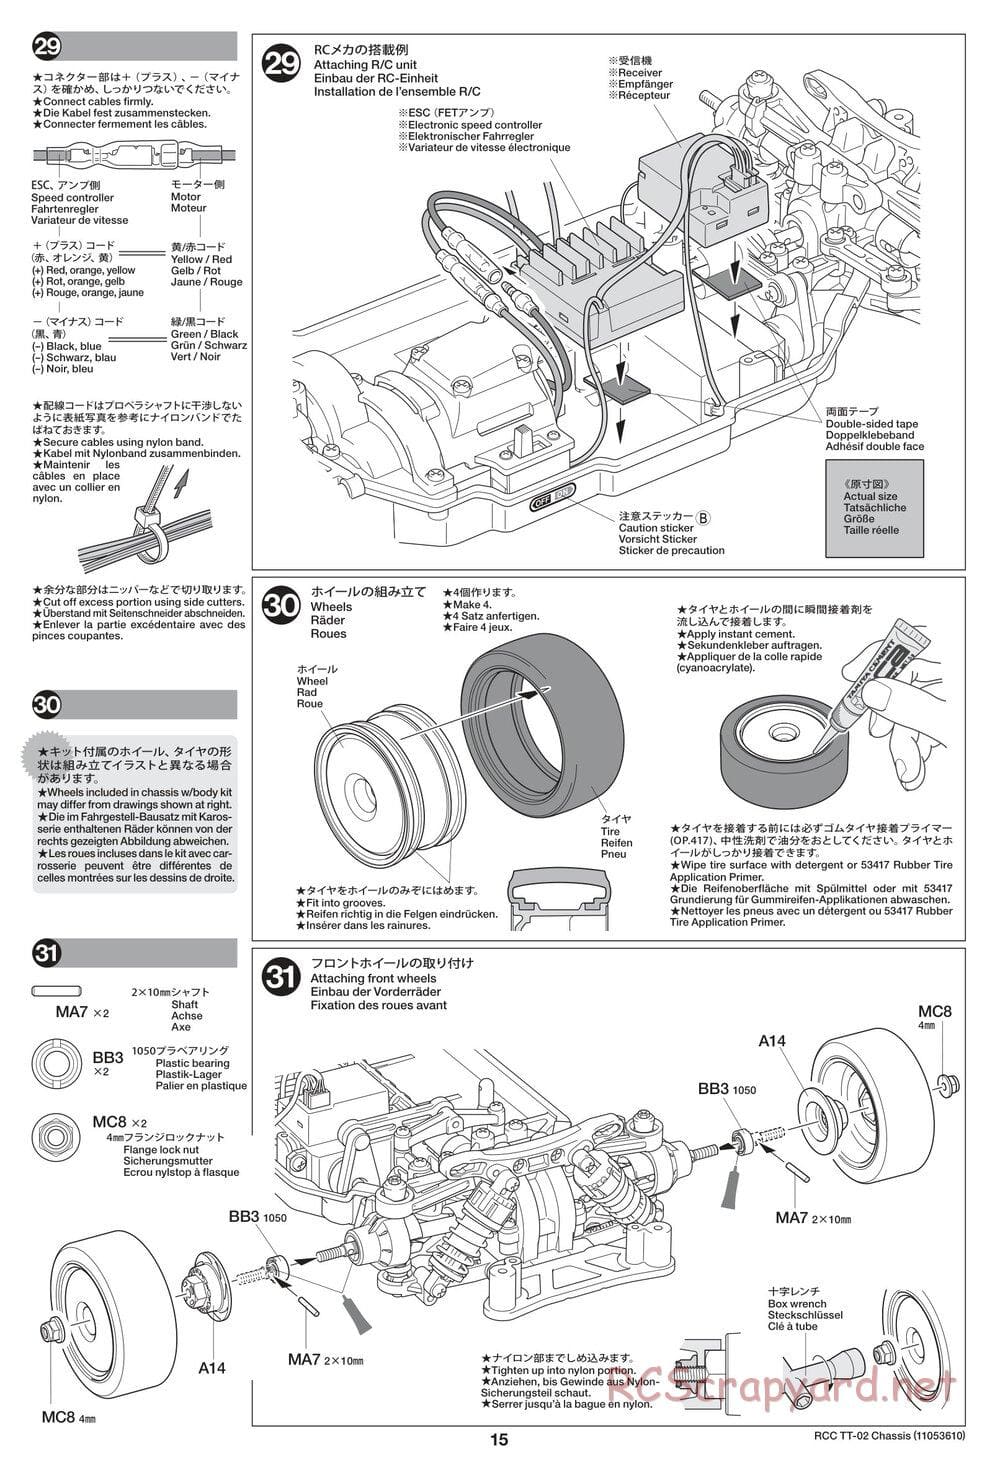 Tamiya - TT-02 Chassis - Manual - Page 15